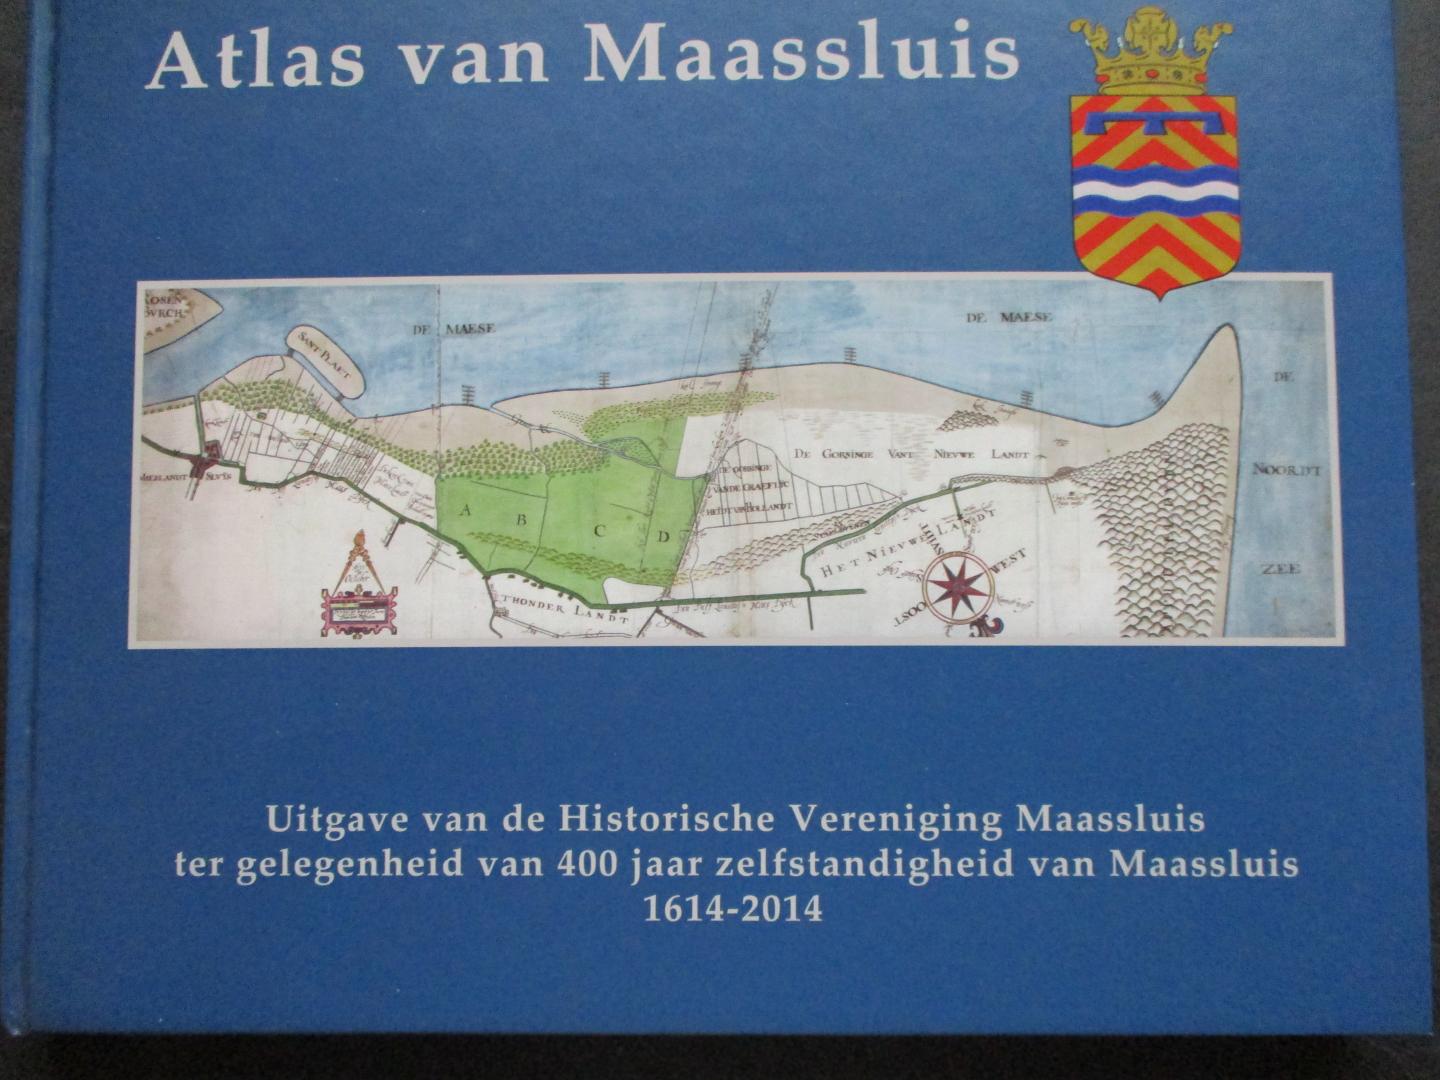 REE, Rinus van de, (samenstelling) - Atlas van Maassluis. Uitgave van de Historische Vereniging Maassluis ter gelegenheid van 400 jaar zelfstandigheid van Maassluis 1614-2014.